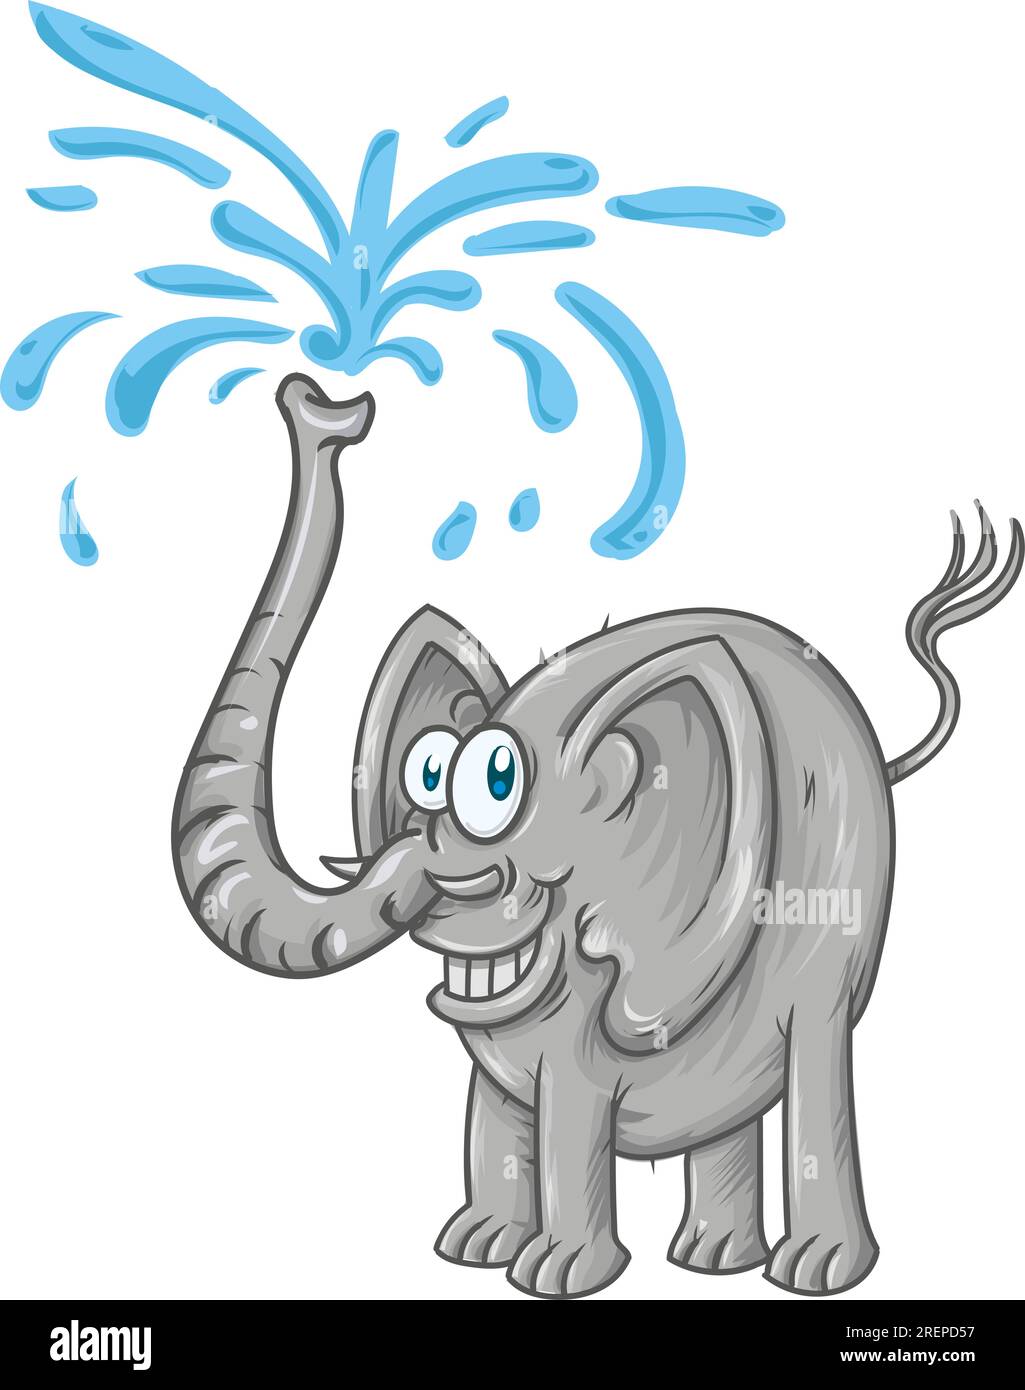 elefante de dibujos animados rociando agua. Doodle ilustración en vector. Lindo vector elefante Ilustración del Vector